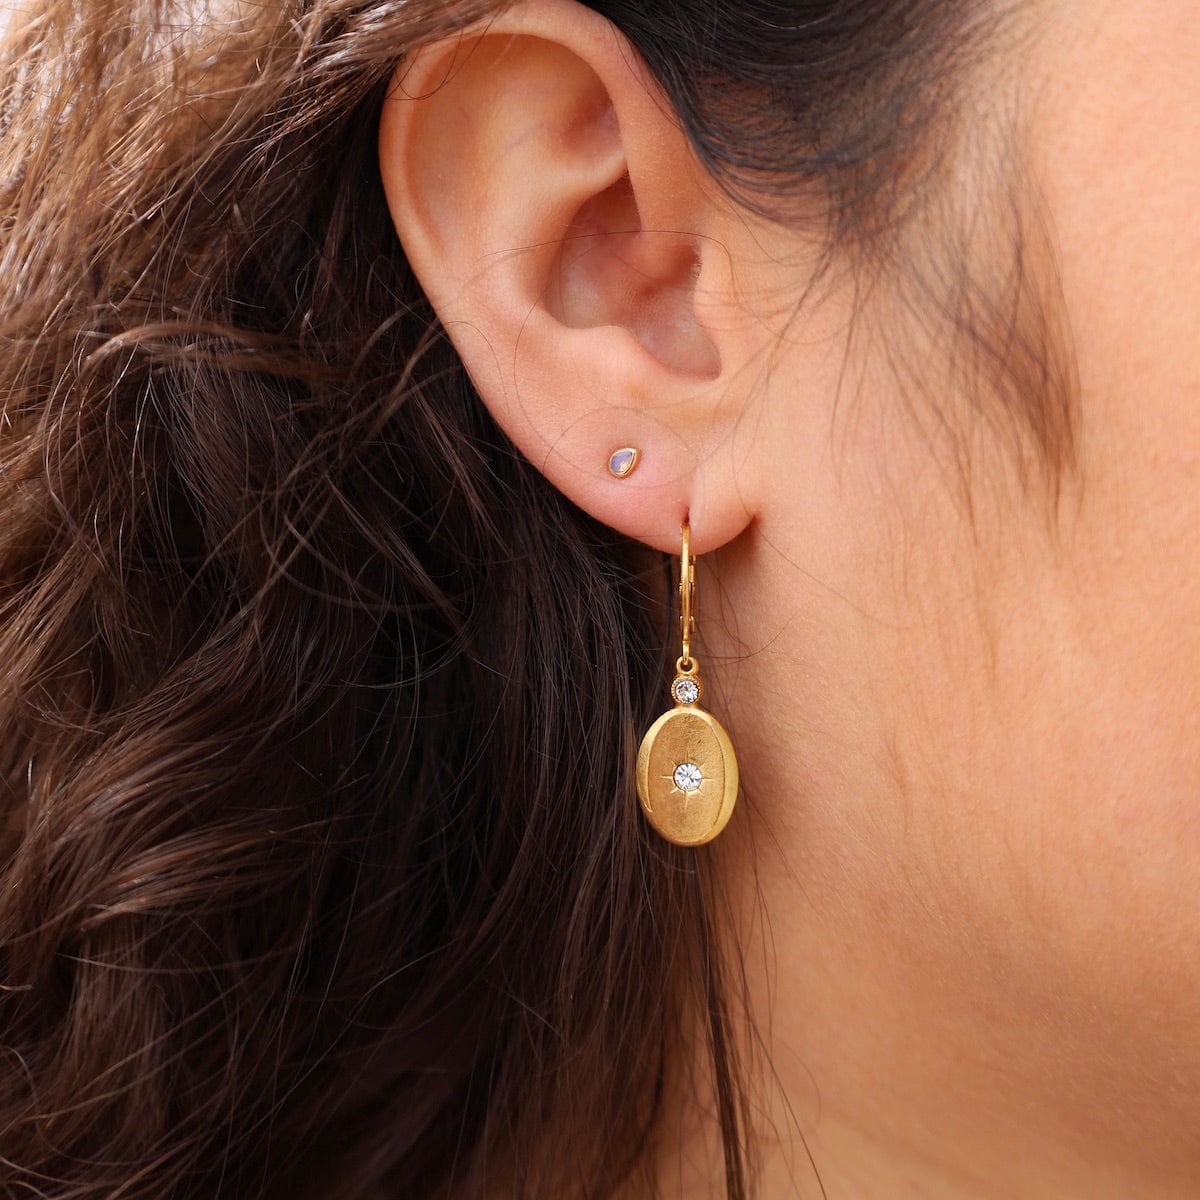 EAR-JM Oval Drop Earrings - Gold Plate